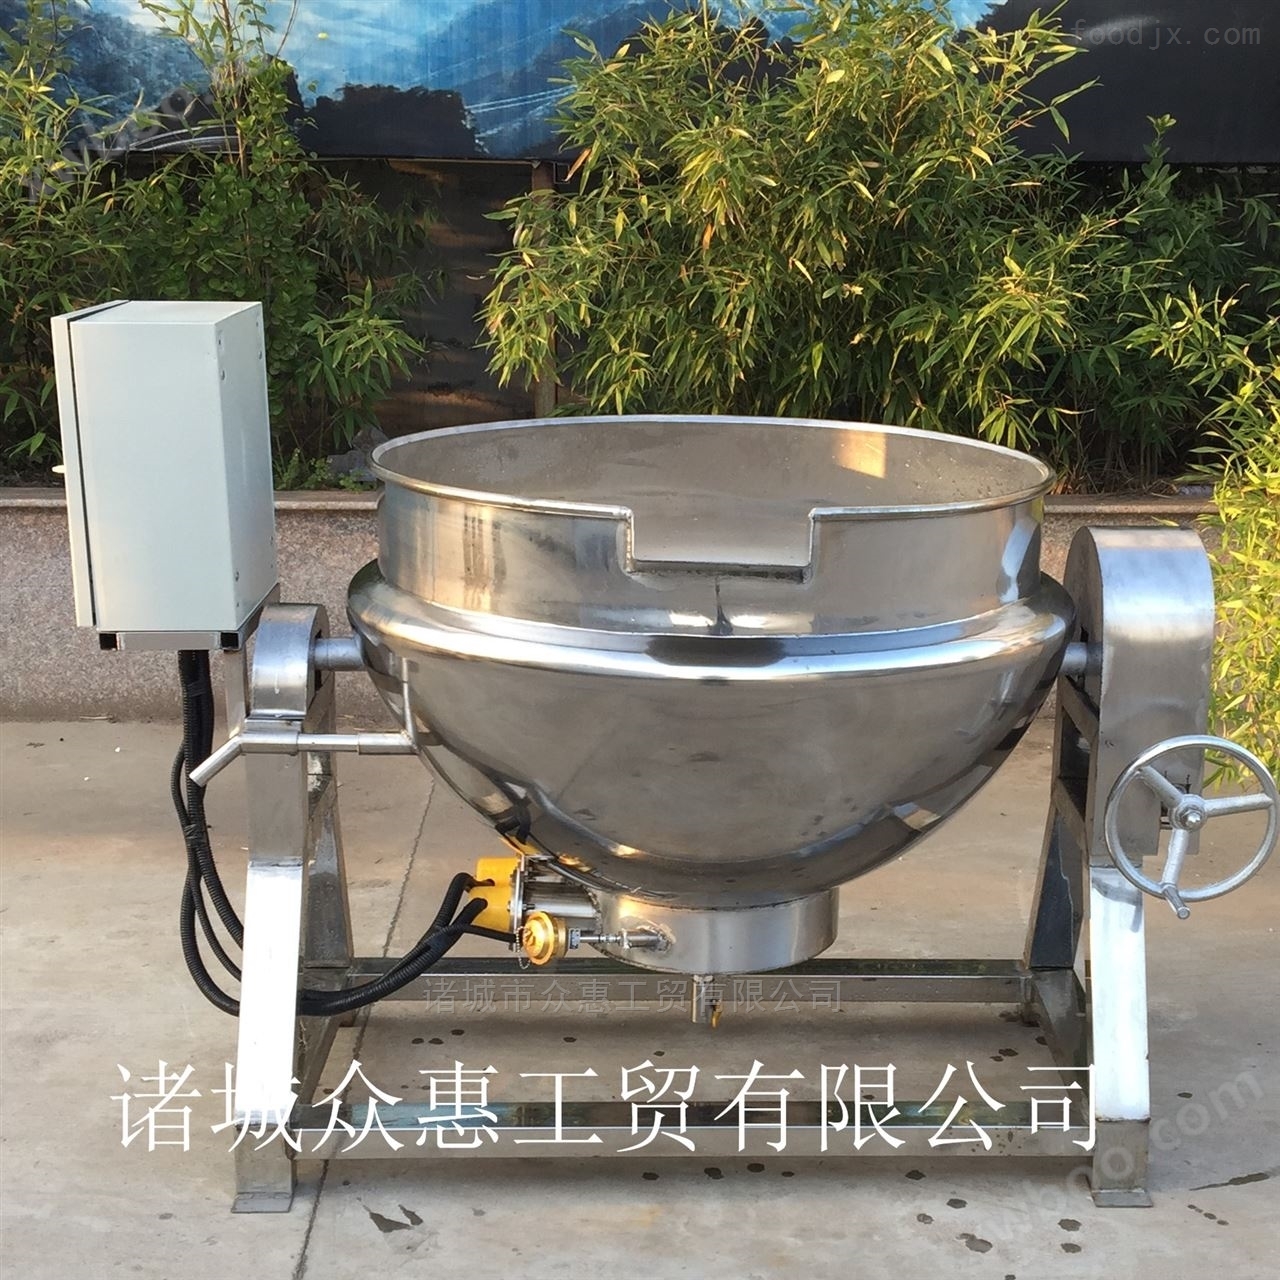 众惠牌大型搅拌不锈钢夹层锅专业定制